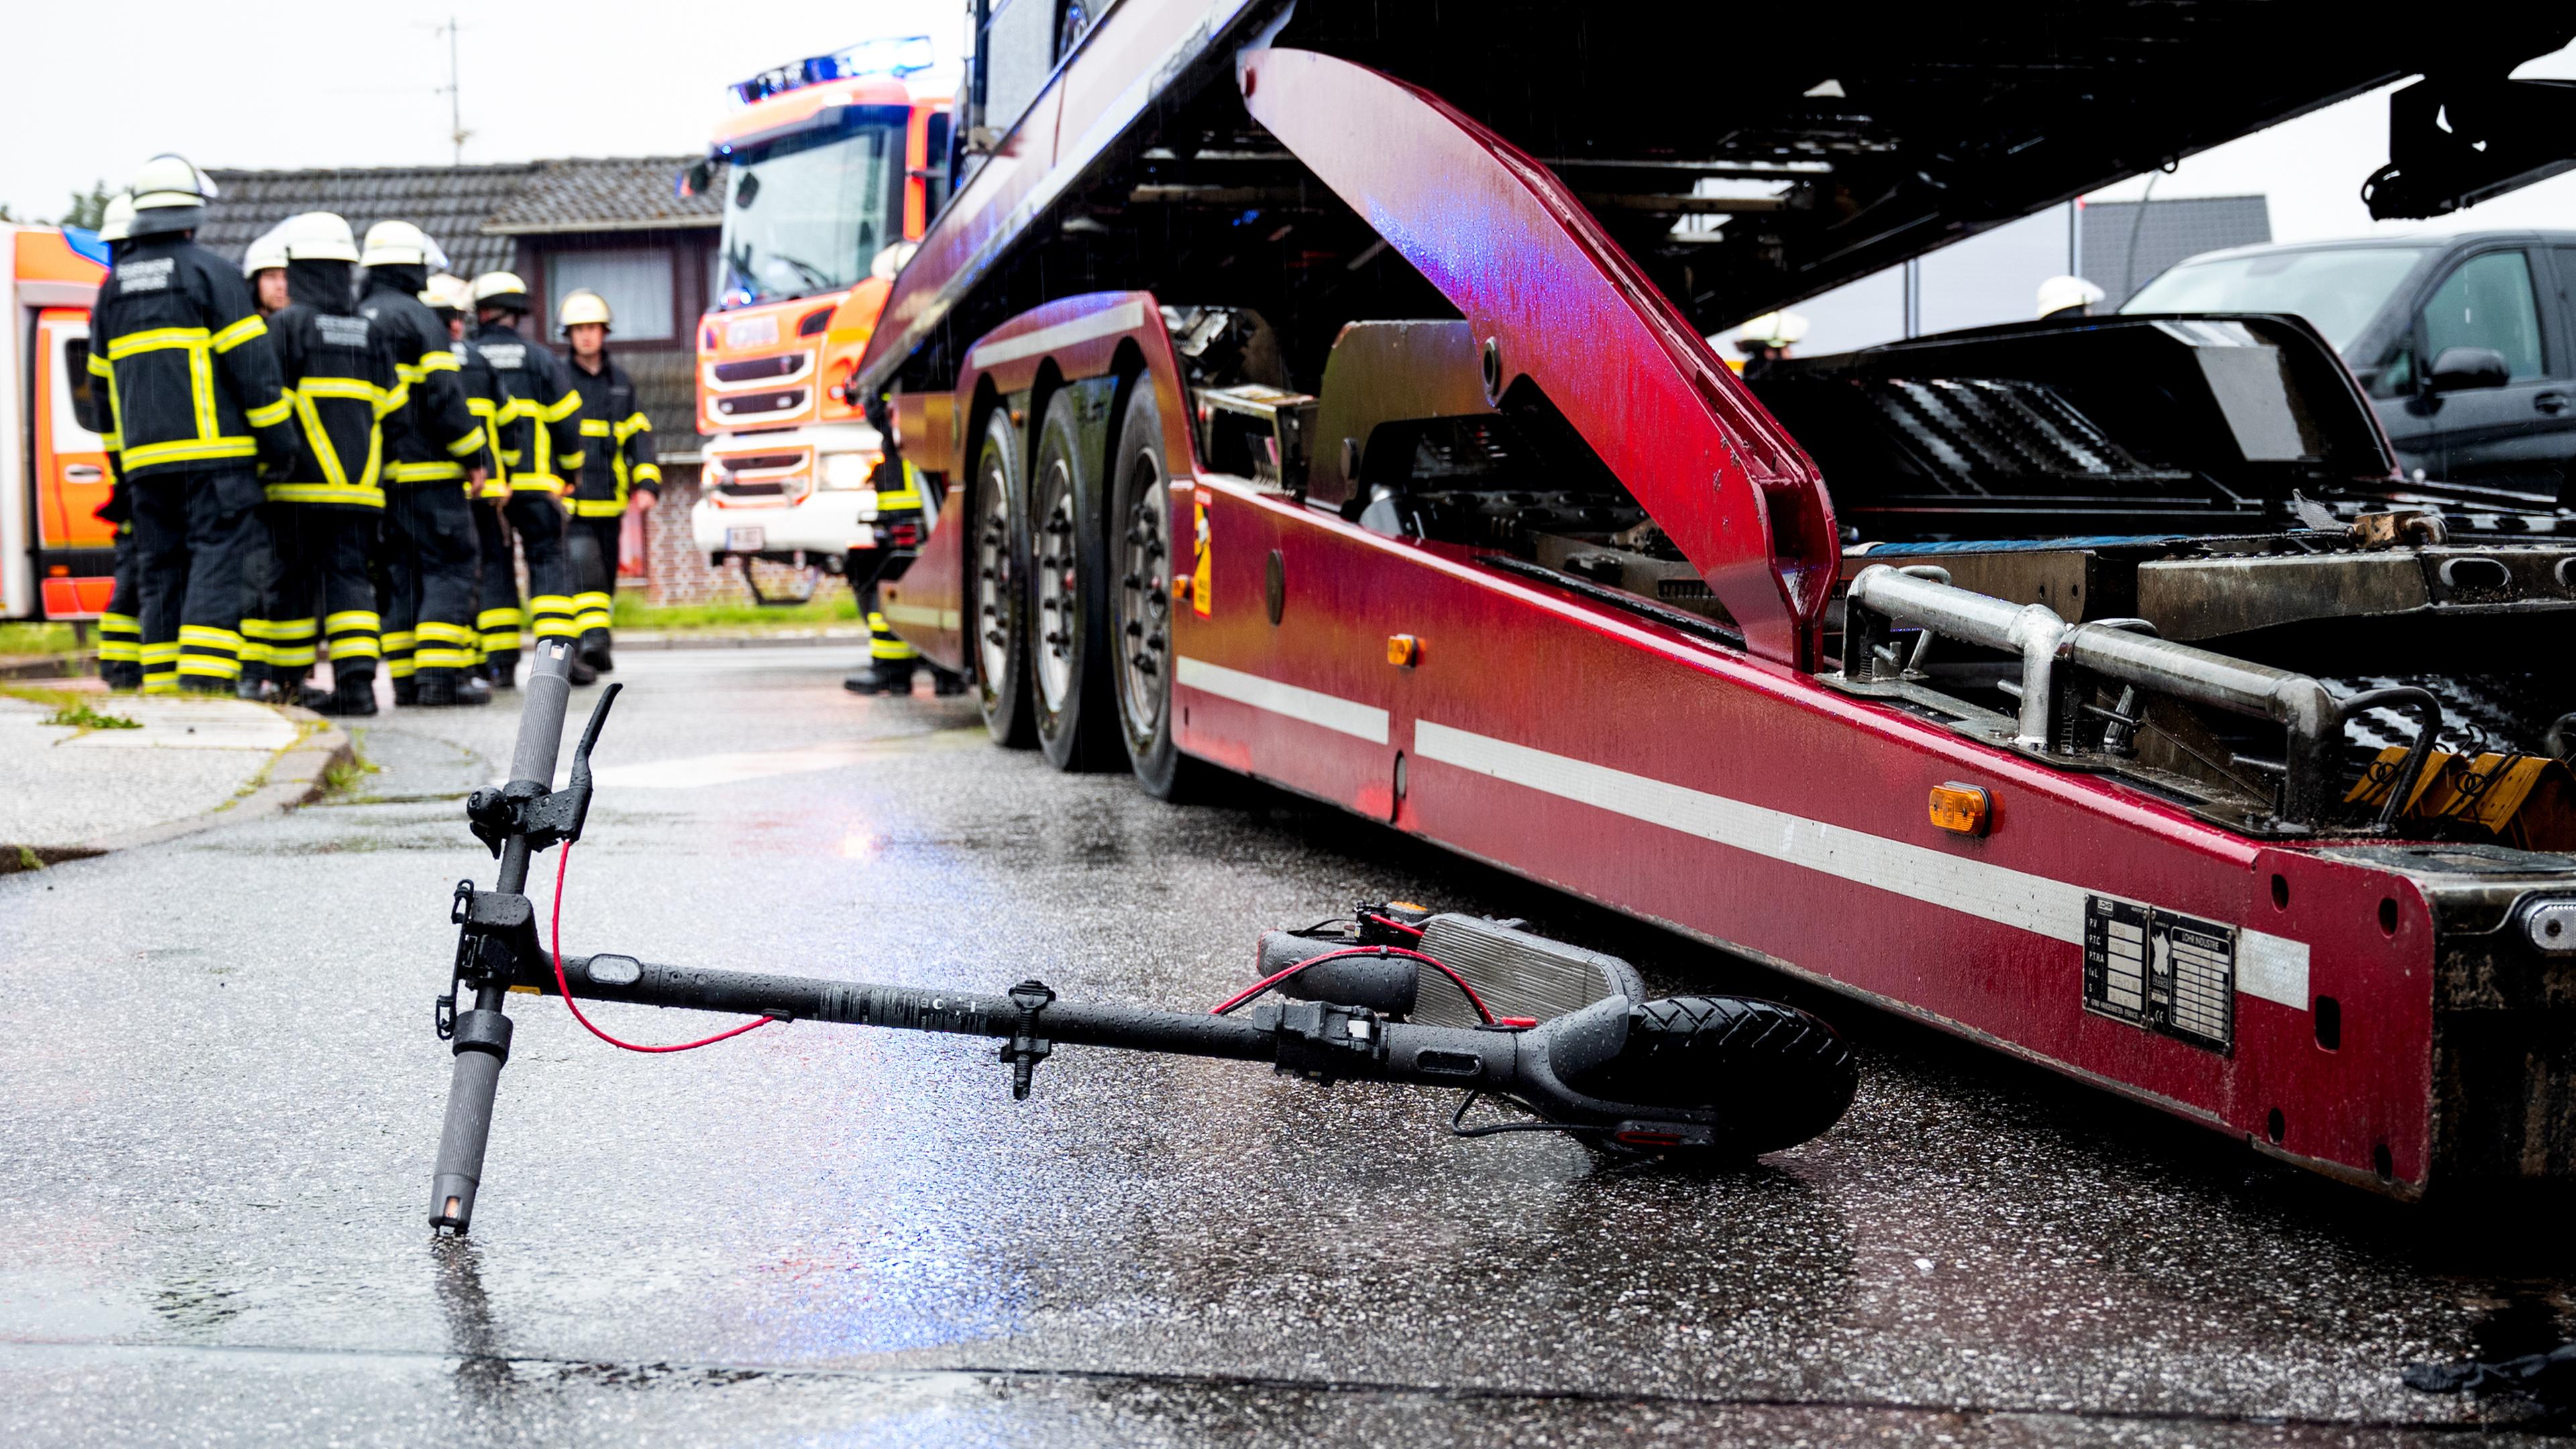  Ein E-Roller liegt an einer Unfallstelle neben einem Lastwagen. 